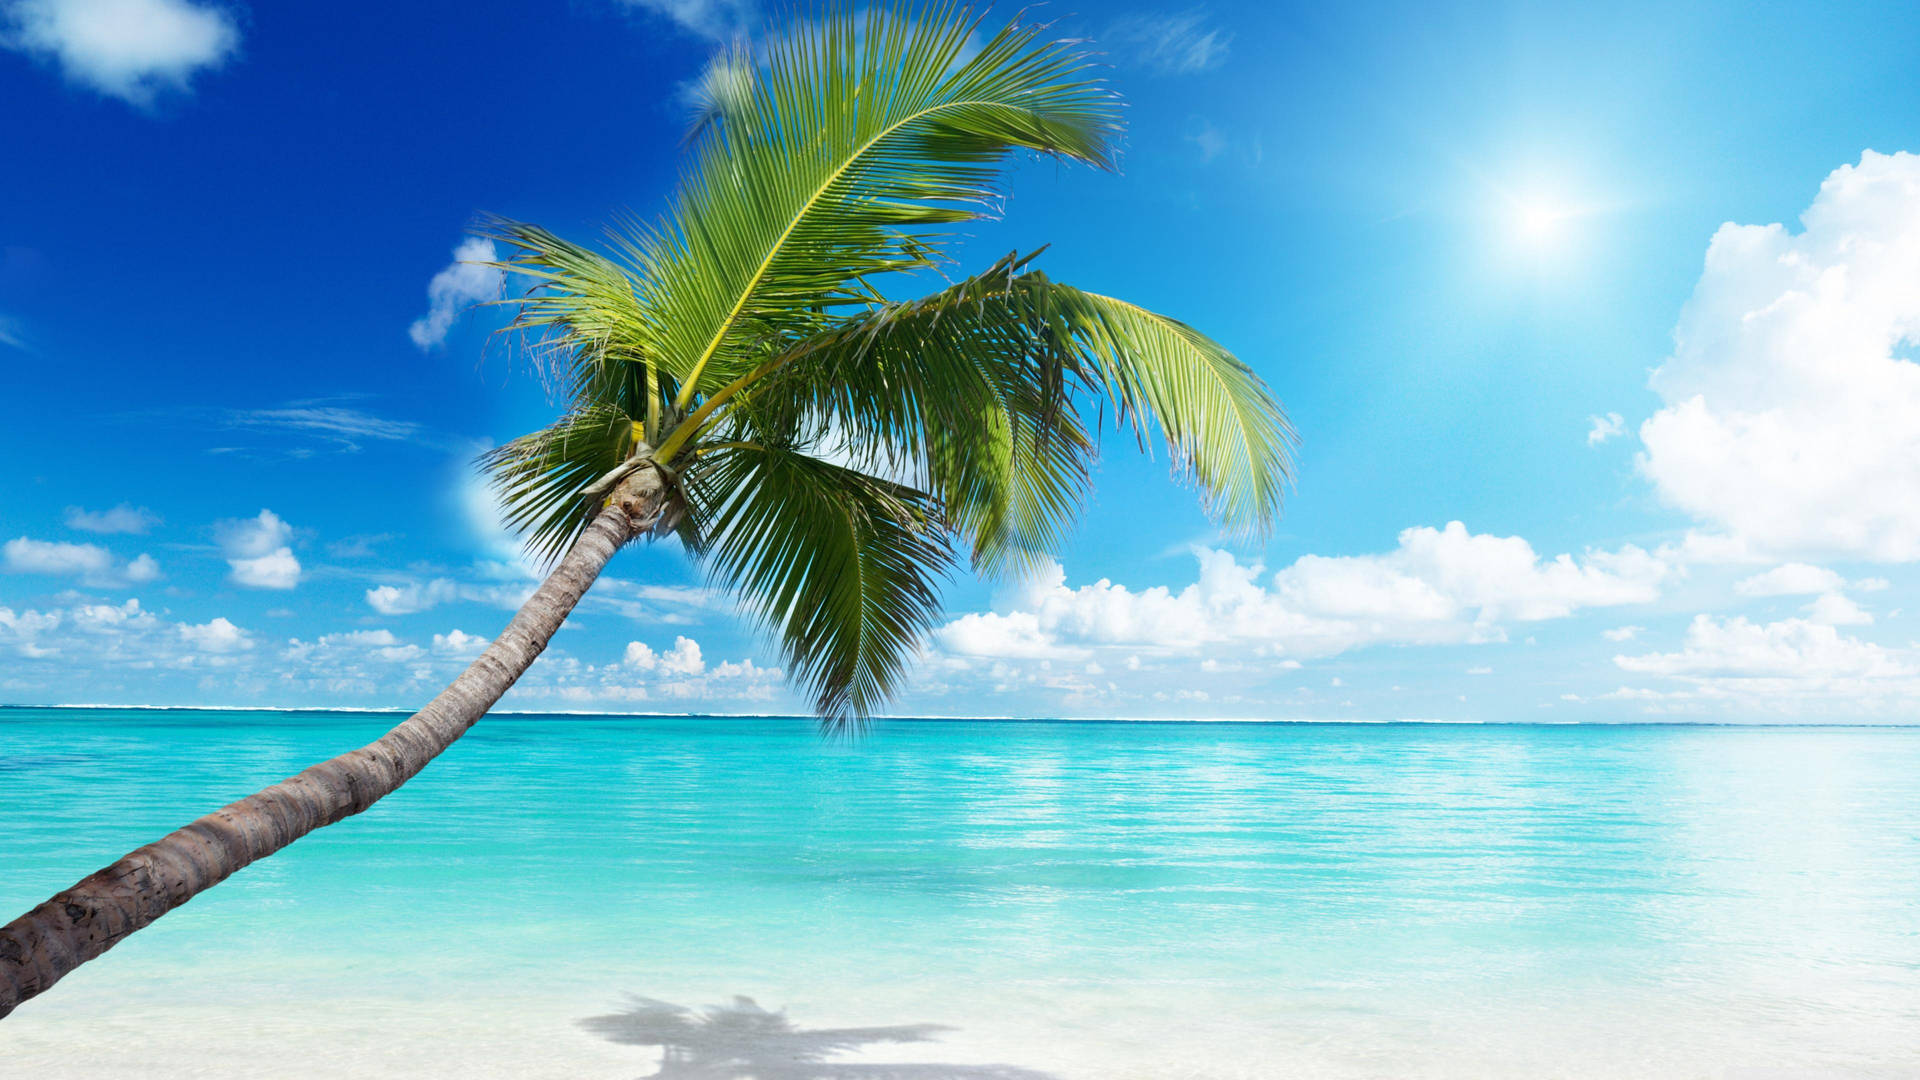 4k Beach With Palm Tree